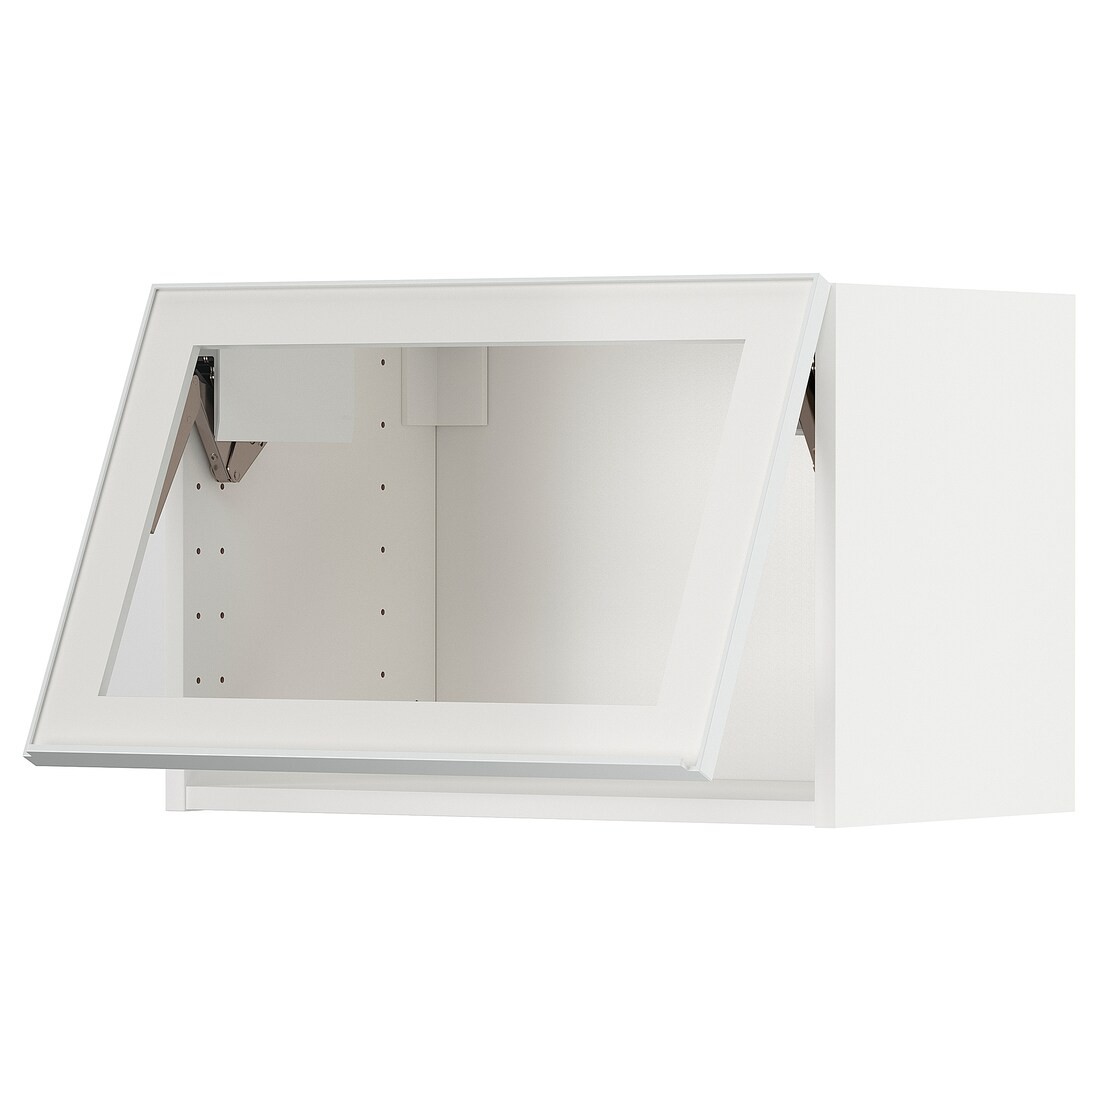 IKEA METOD МЕТОД Навесной горизонтальный шкаф, белый / Hesta белое прозрачное стекло, 60x40 см 99490575 | 994.905.75